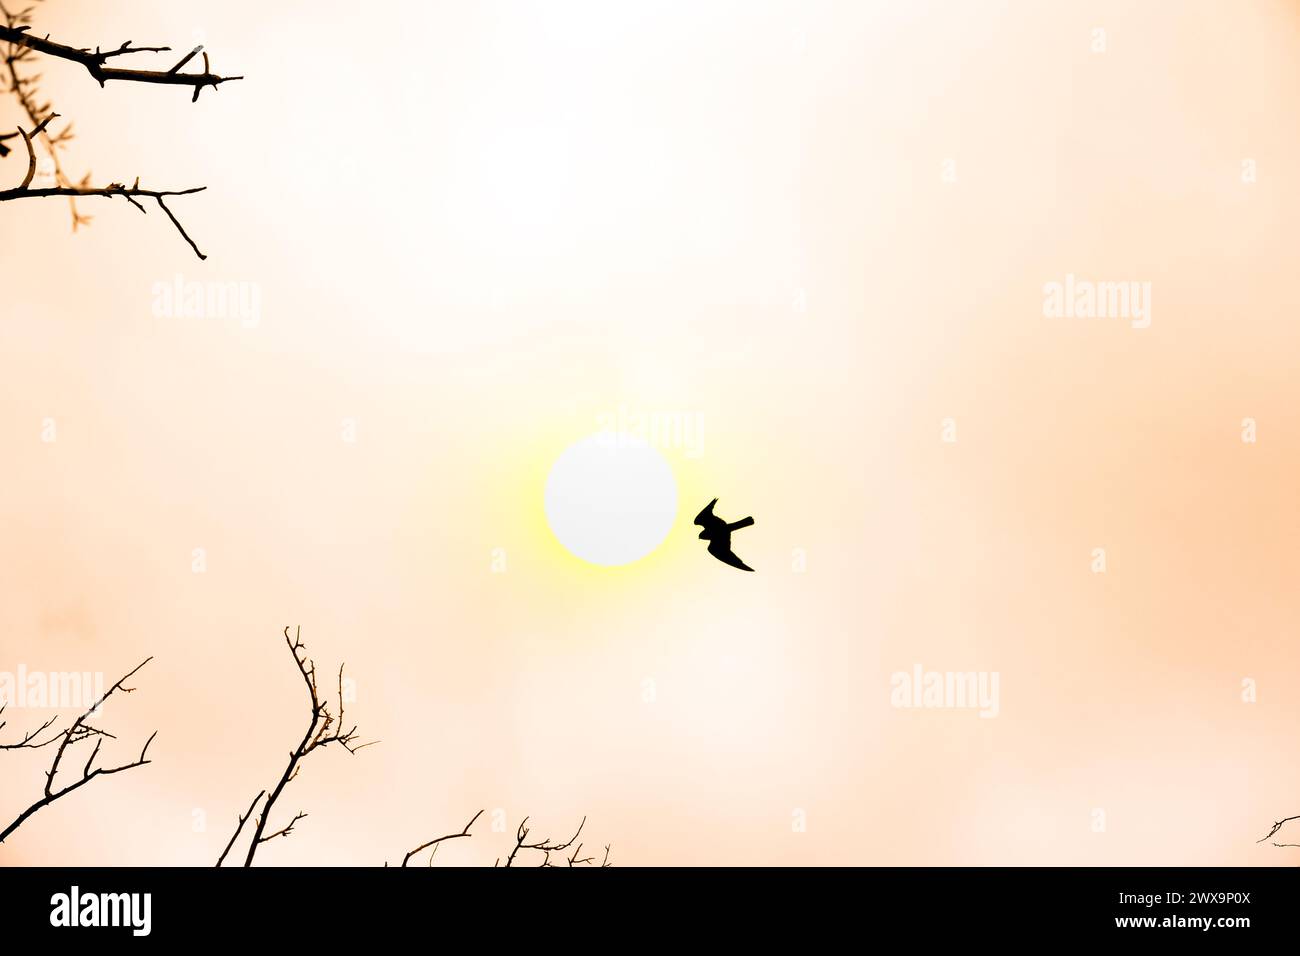 Falcon nel cielo e disco solare - volo libero veloce. Immagine artistica Foto Stock